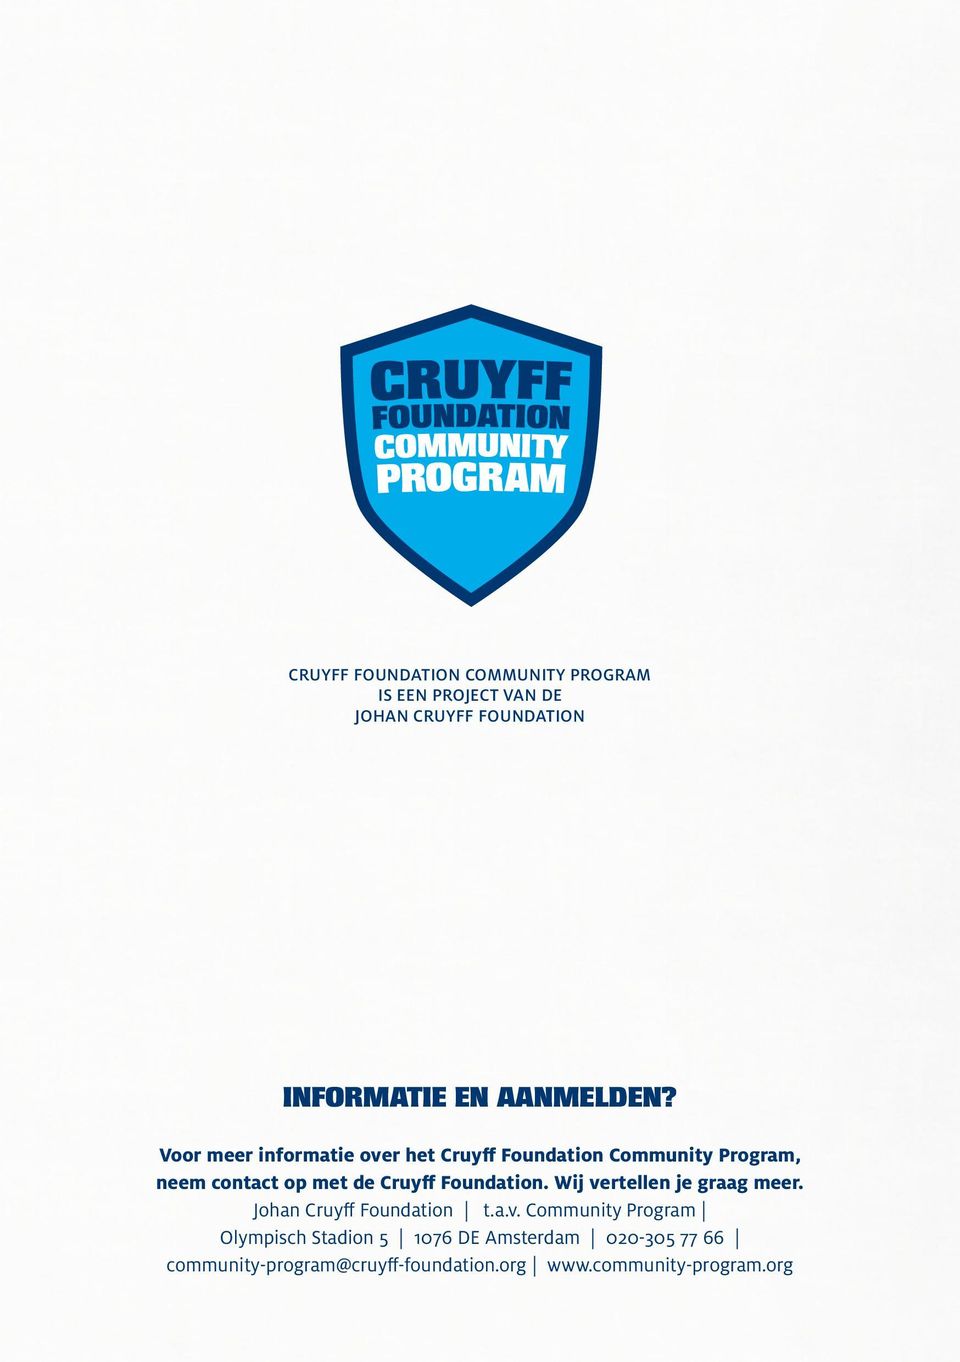 Voor meer informatie over het Cruyff Foundation Community Program, neem contact op met de Cruyff